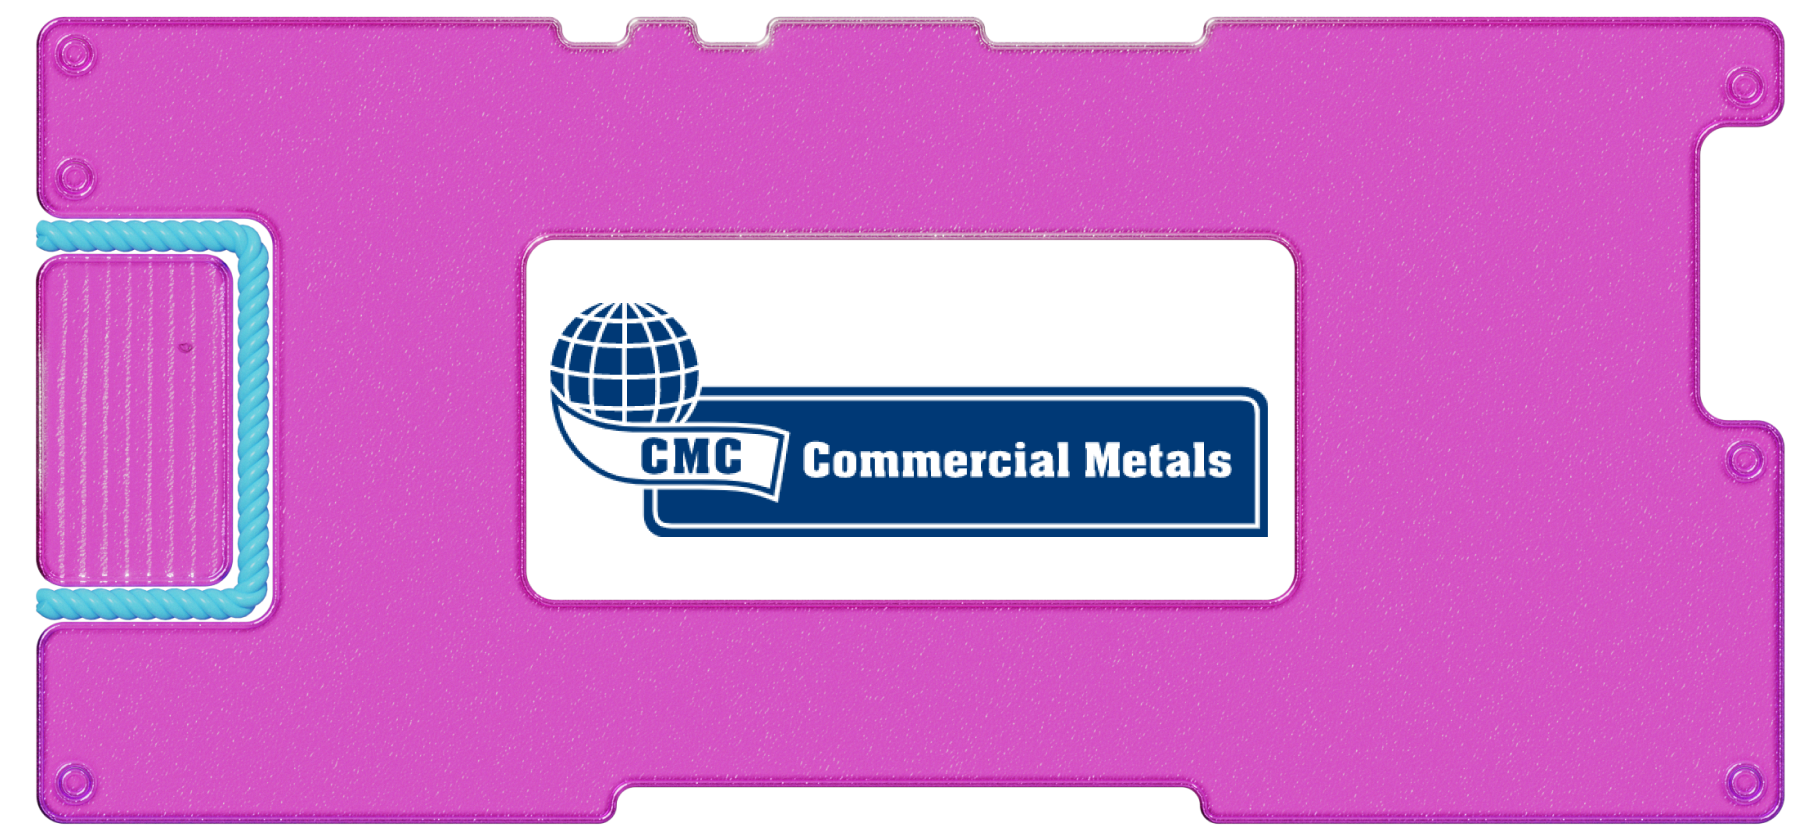 Инвестидея: Commercial Metals, потому что металлы очень нужны